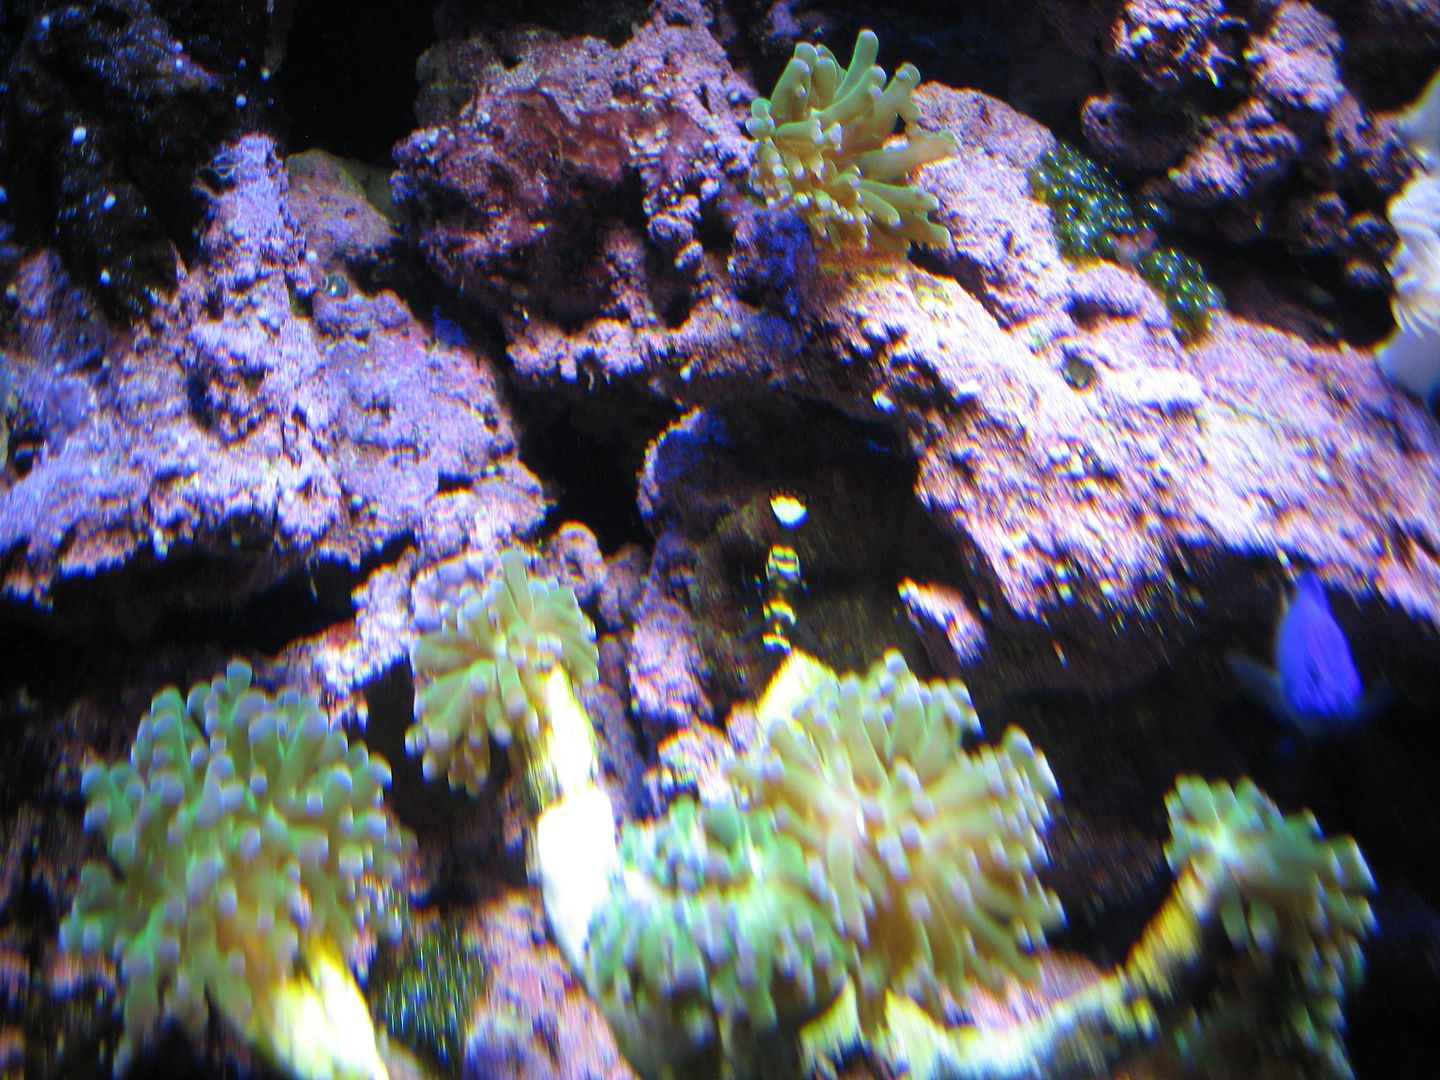 Aquarium_PeacockTailOnGreenMMCA_05DEC201